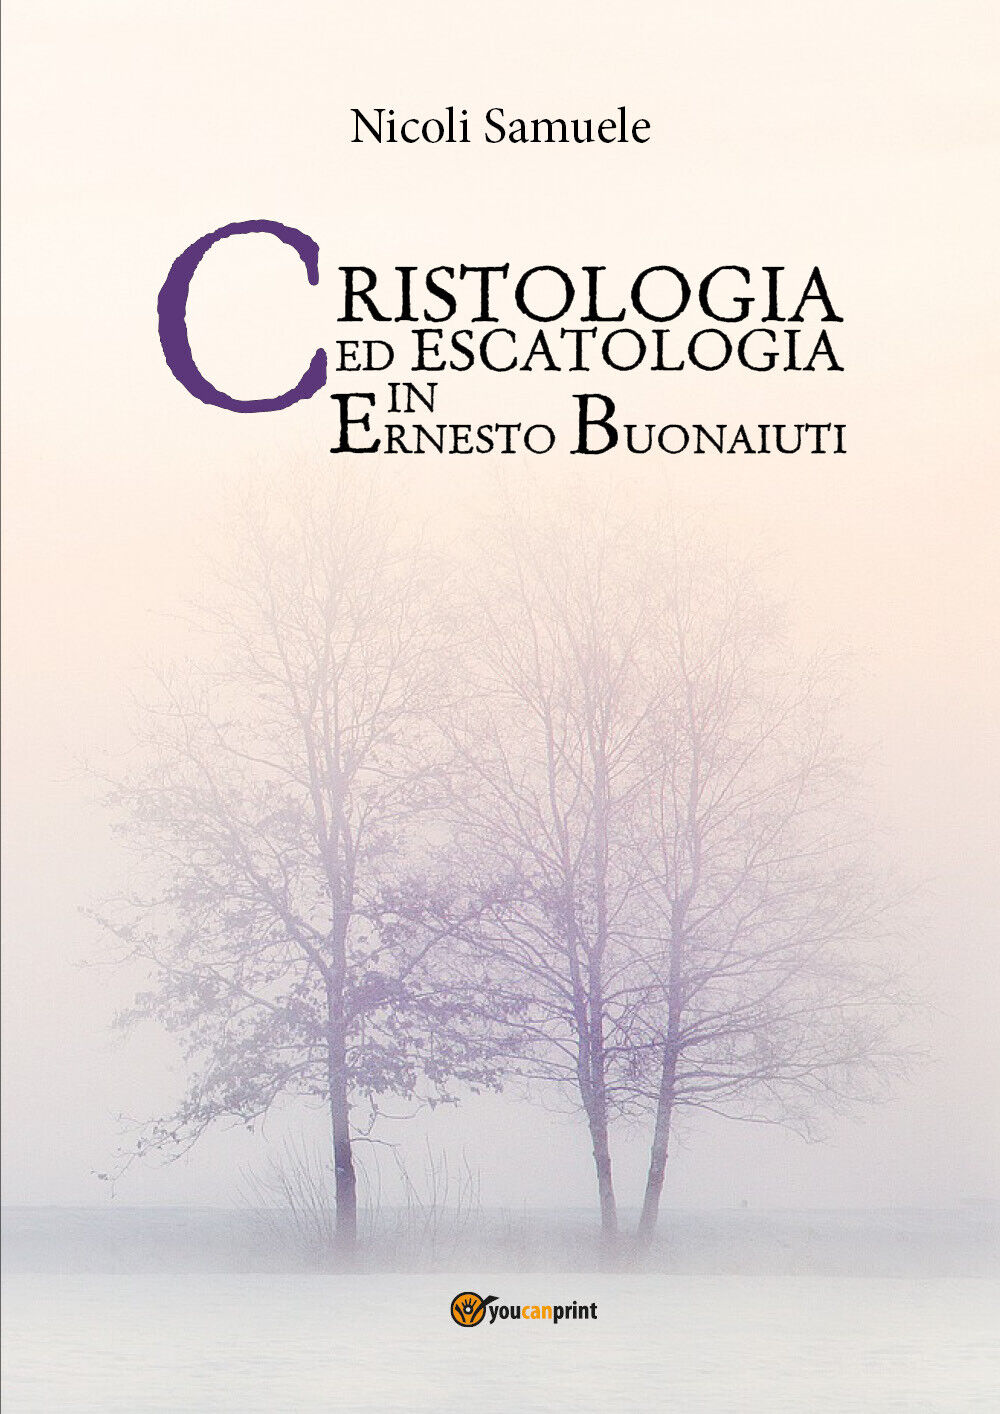 Cristologia ed escatologia in Ernesto Buonaiuti, Samuele Nicoli,  2017,  Youcan.